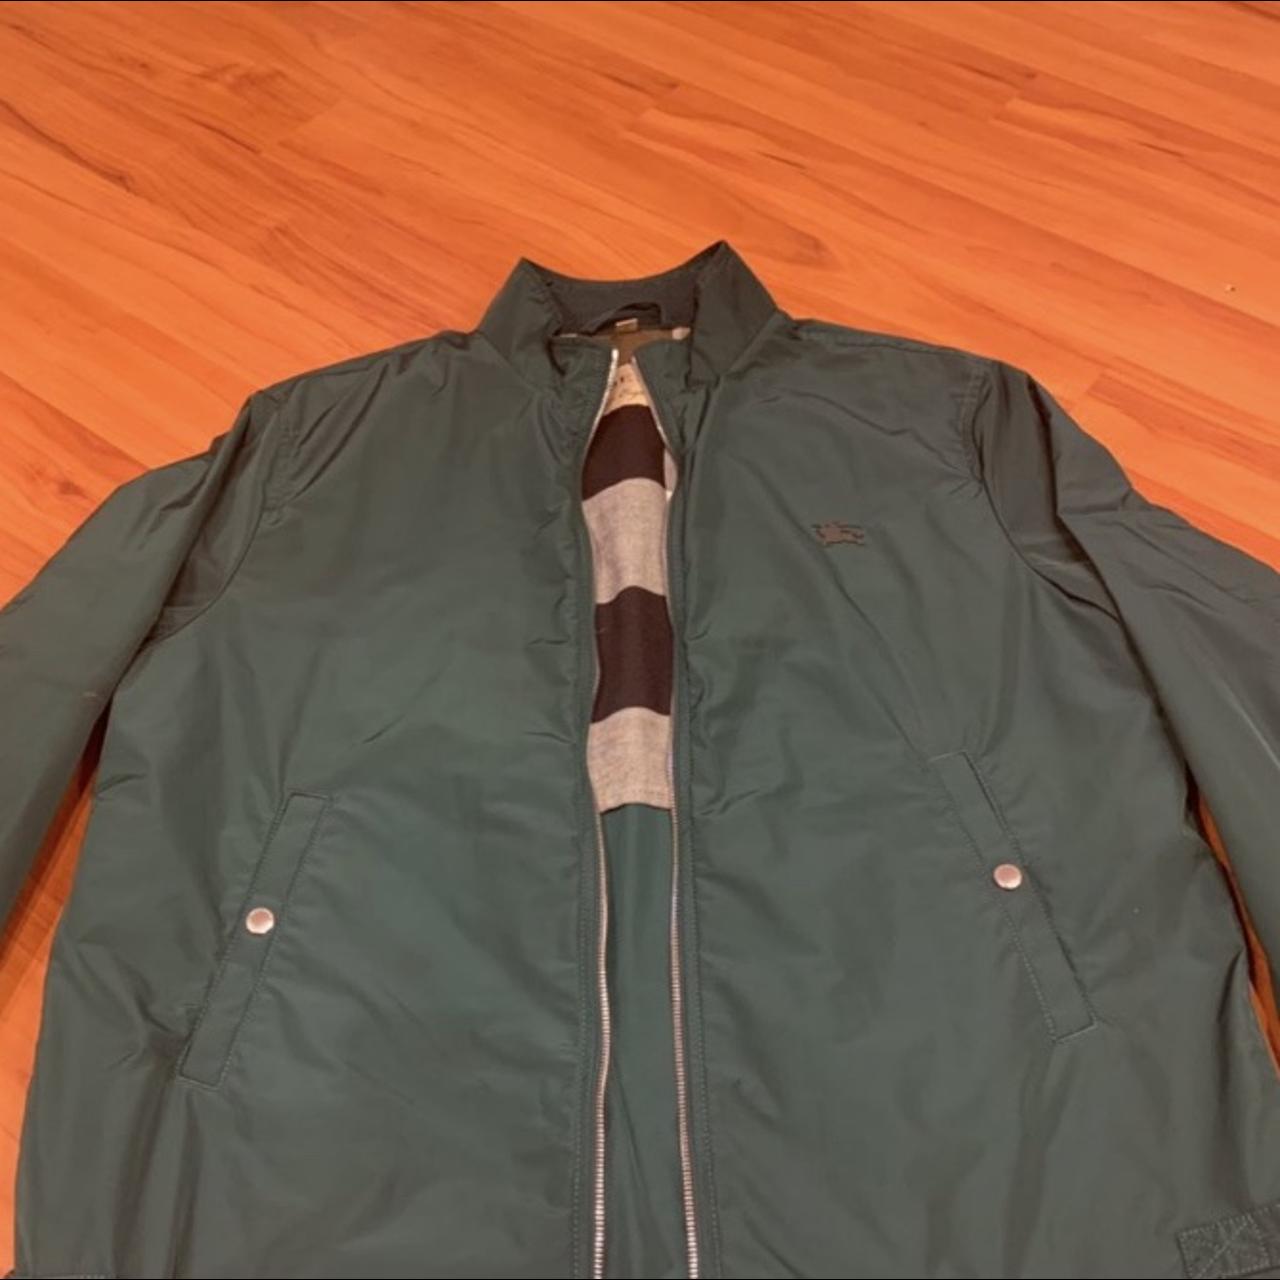 Burberry men’s lightweight technical jacket Size XL,... - Depop